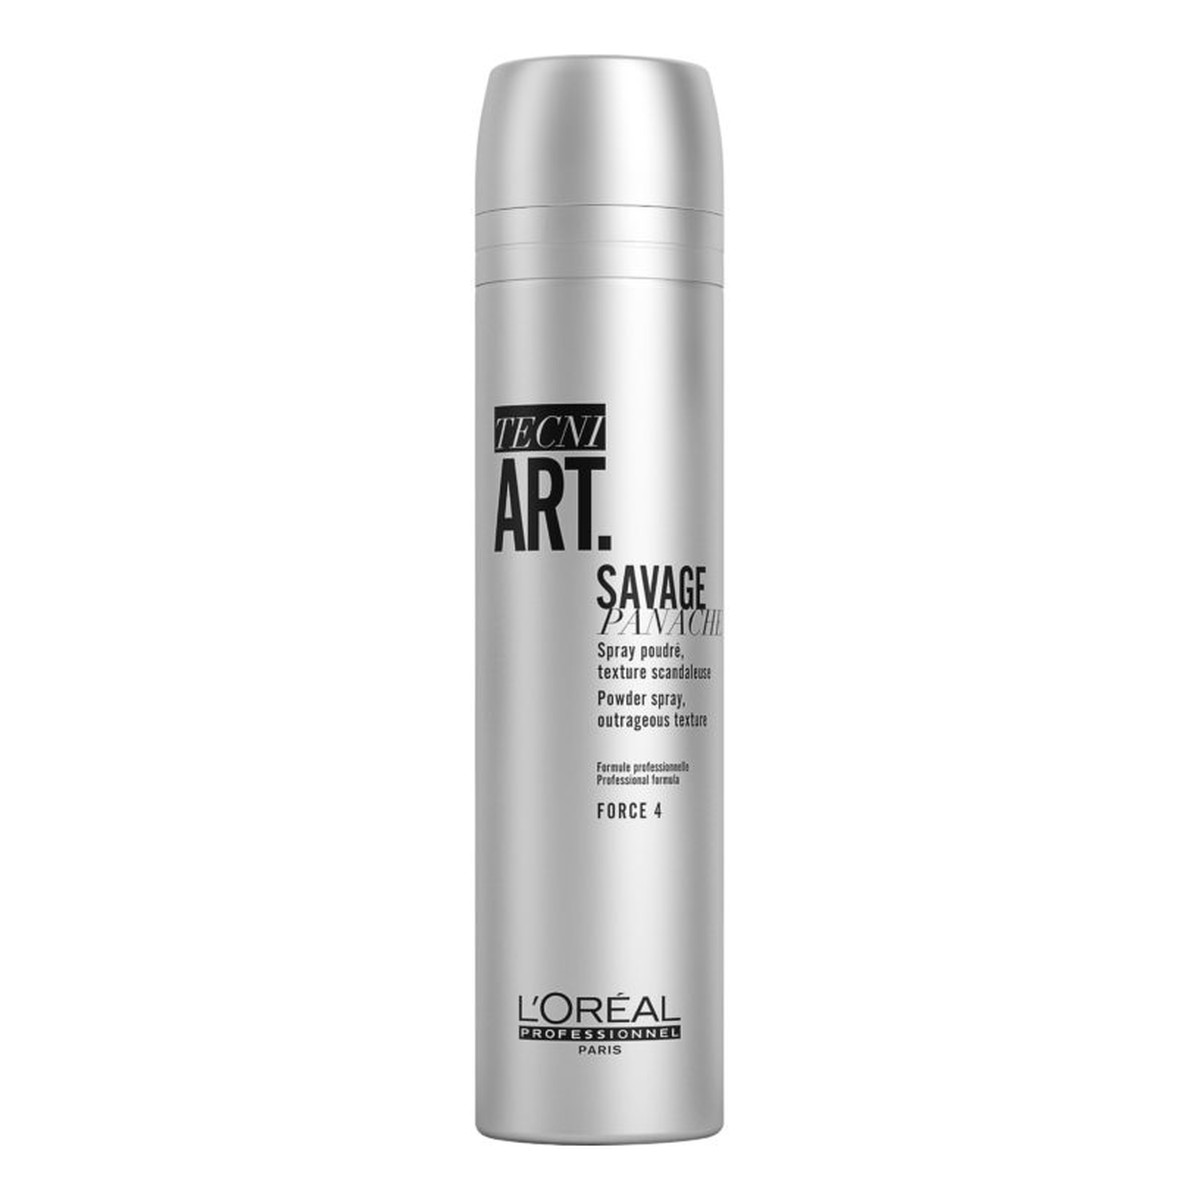 L'Oreal Paris Tecni Art Pure Savage Panache teksturyzujący puder w spray'u nadający objętość włosom Force 4 250ml